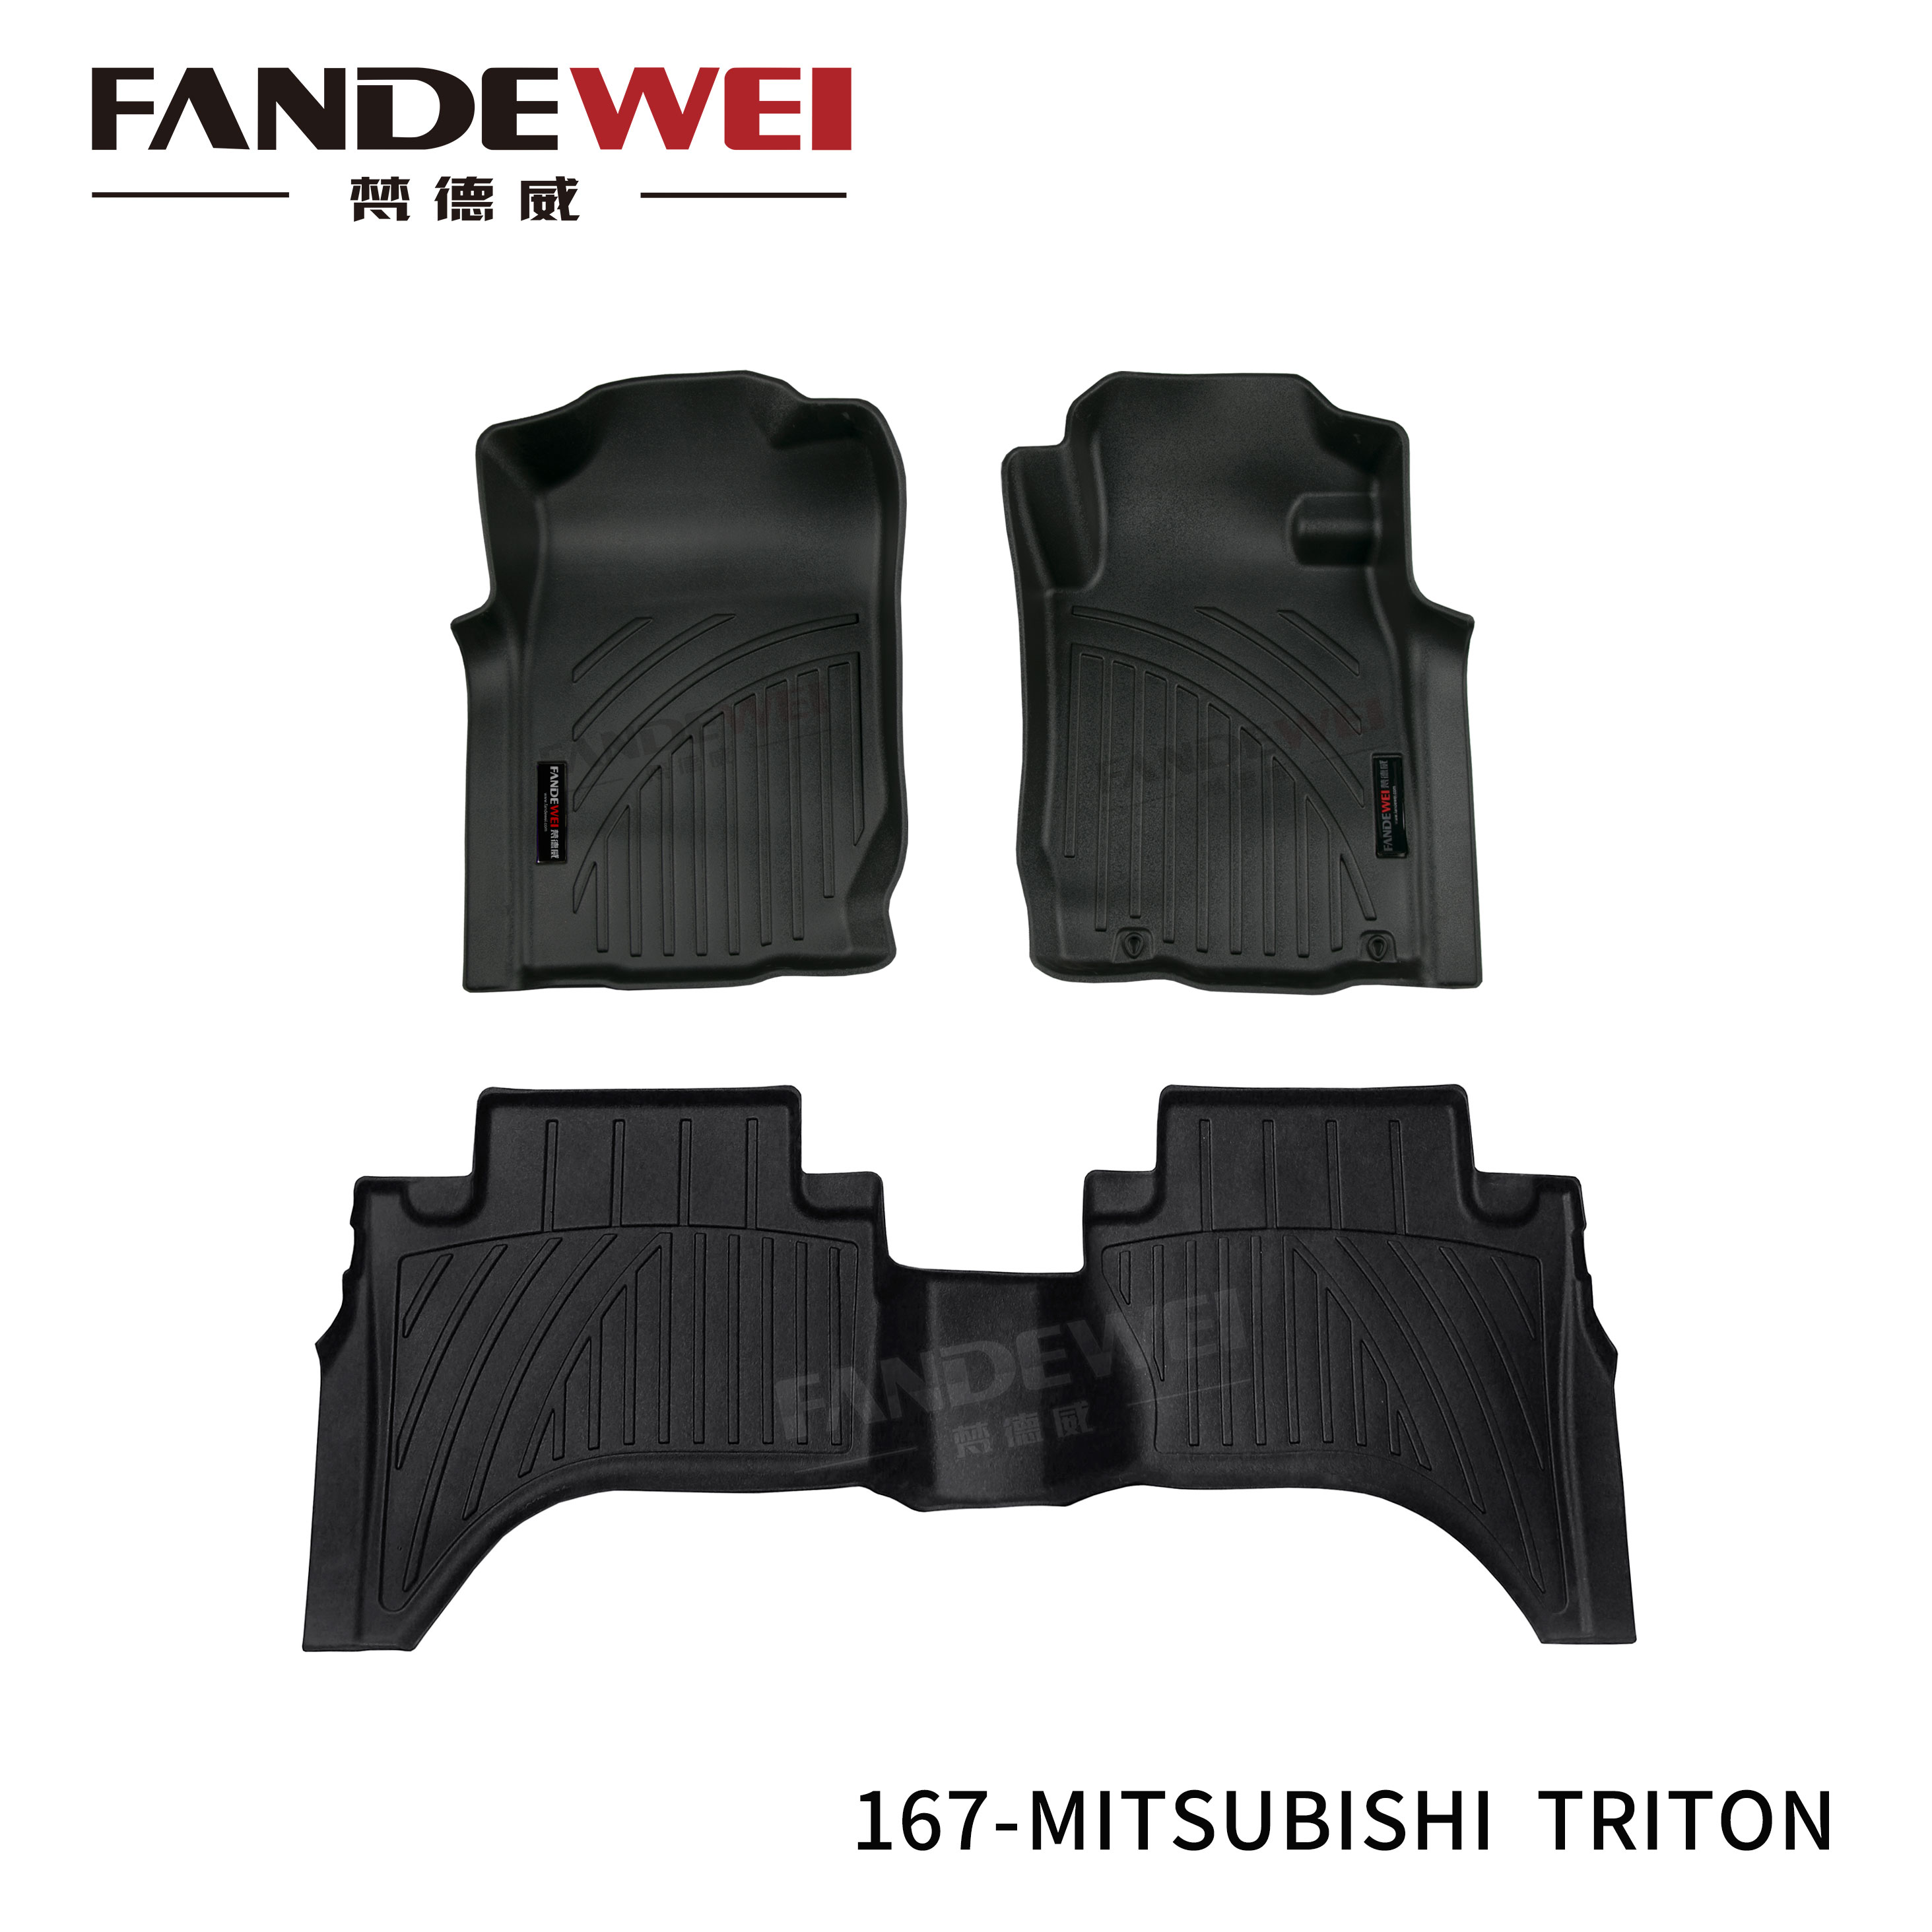 167-Mitsubishi-triton